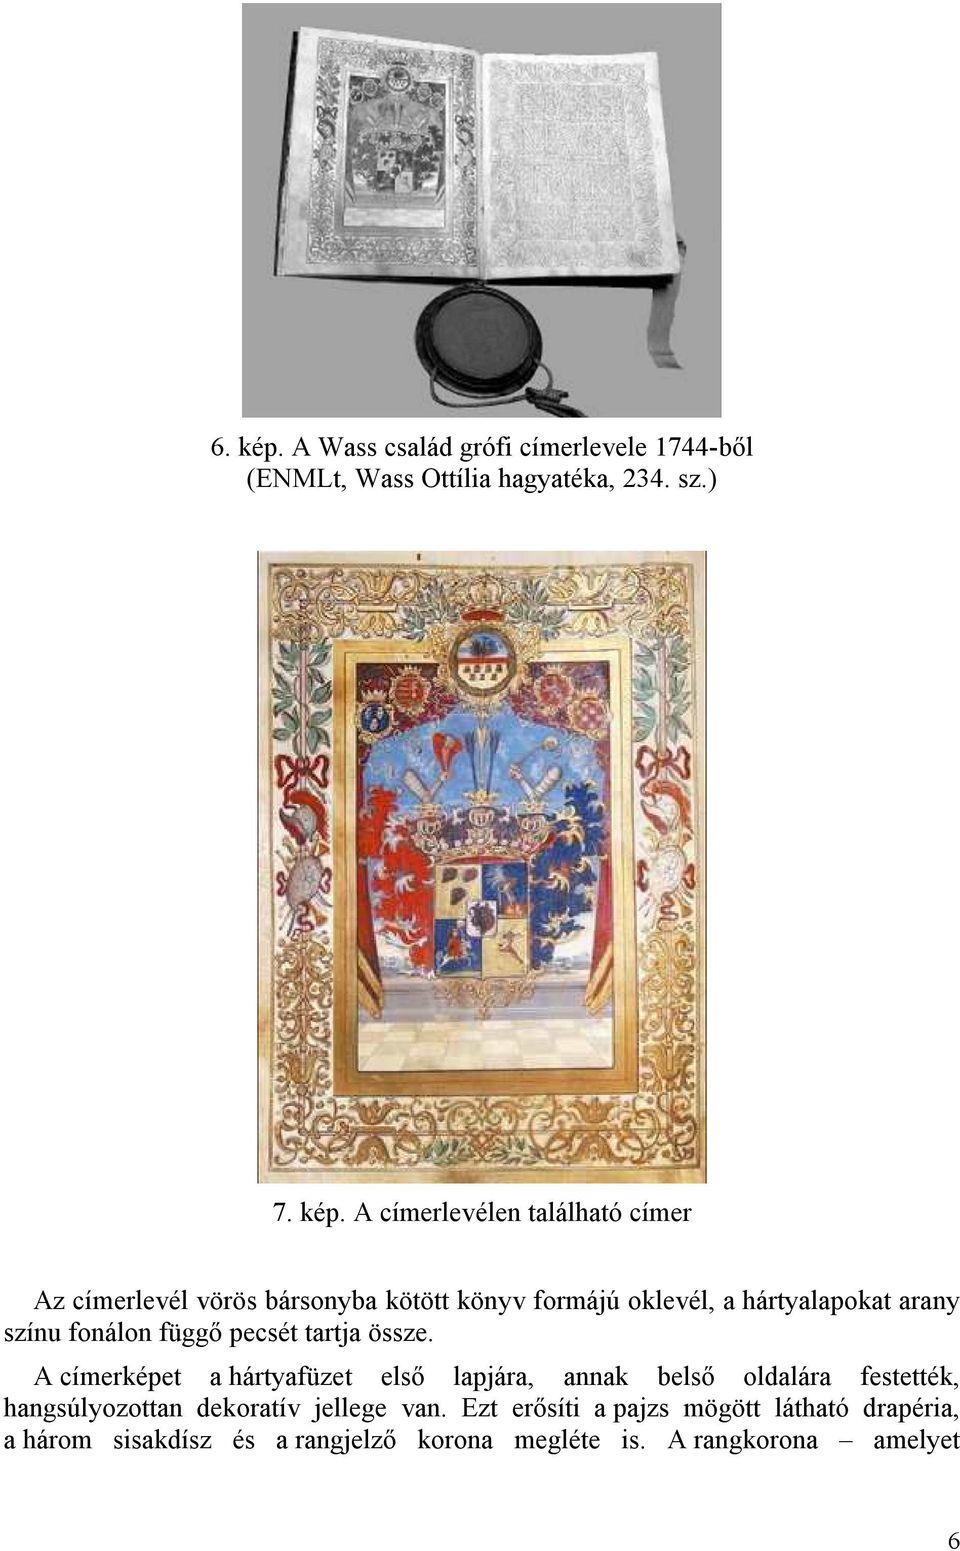 A címerlevélen található címer Az címerlevél vörös bársonyba kötött könyv formájú oklevél, a hártyalapokat arany színu